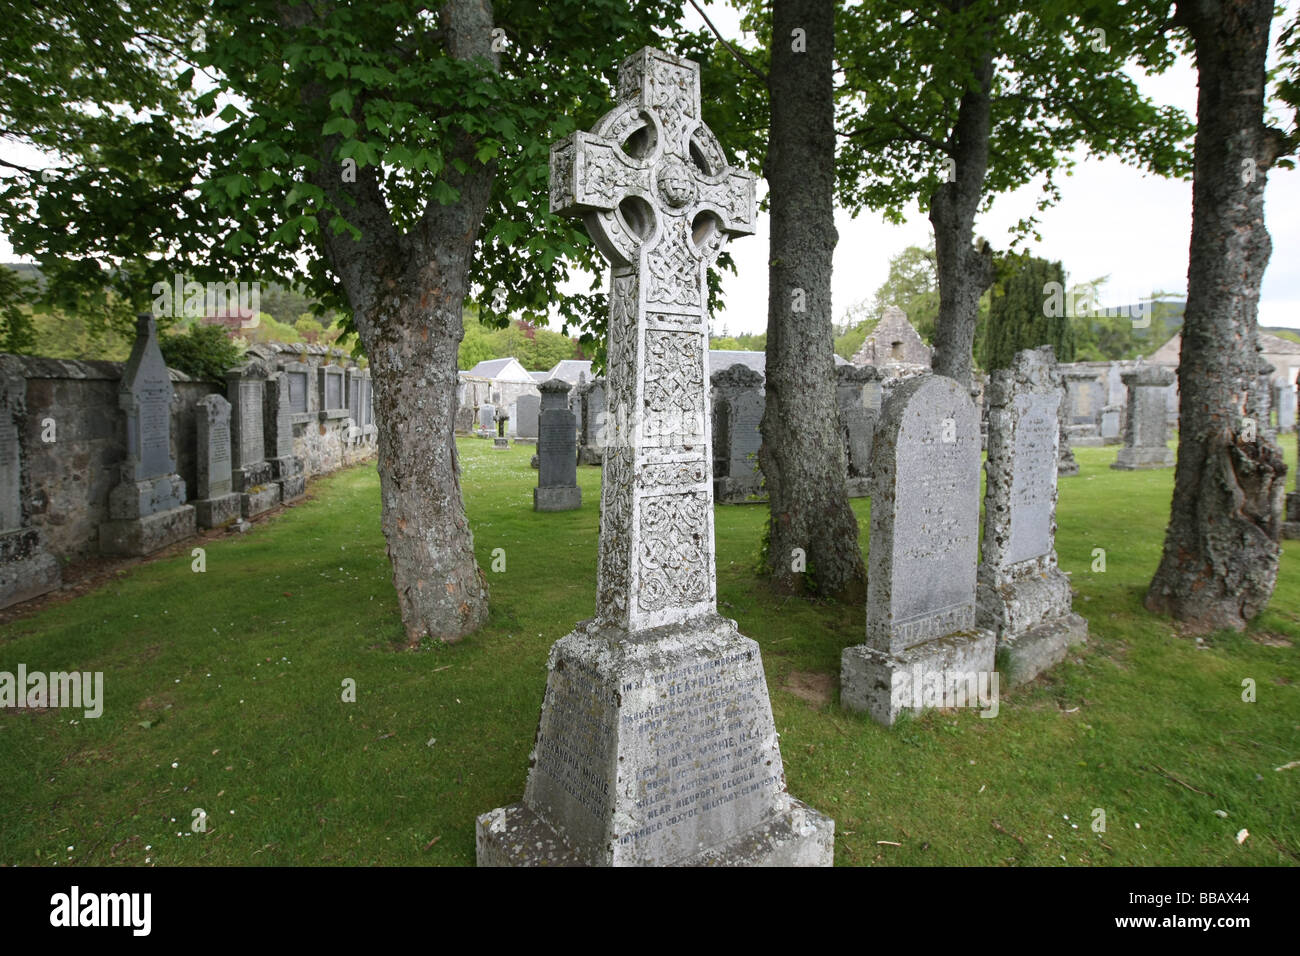 Crathie Kirkyard près de Balmoral Castle, Scotland, UK, où de nombreux fonctionnaires des familles Royale de Balmoral sont enterrés Banque D'Images